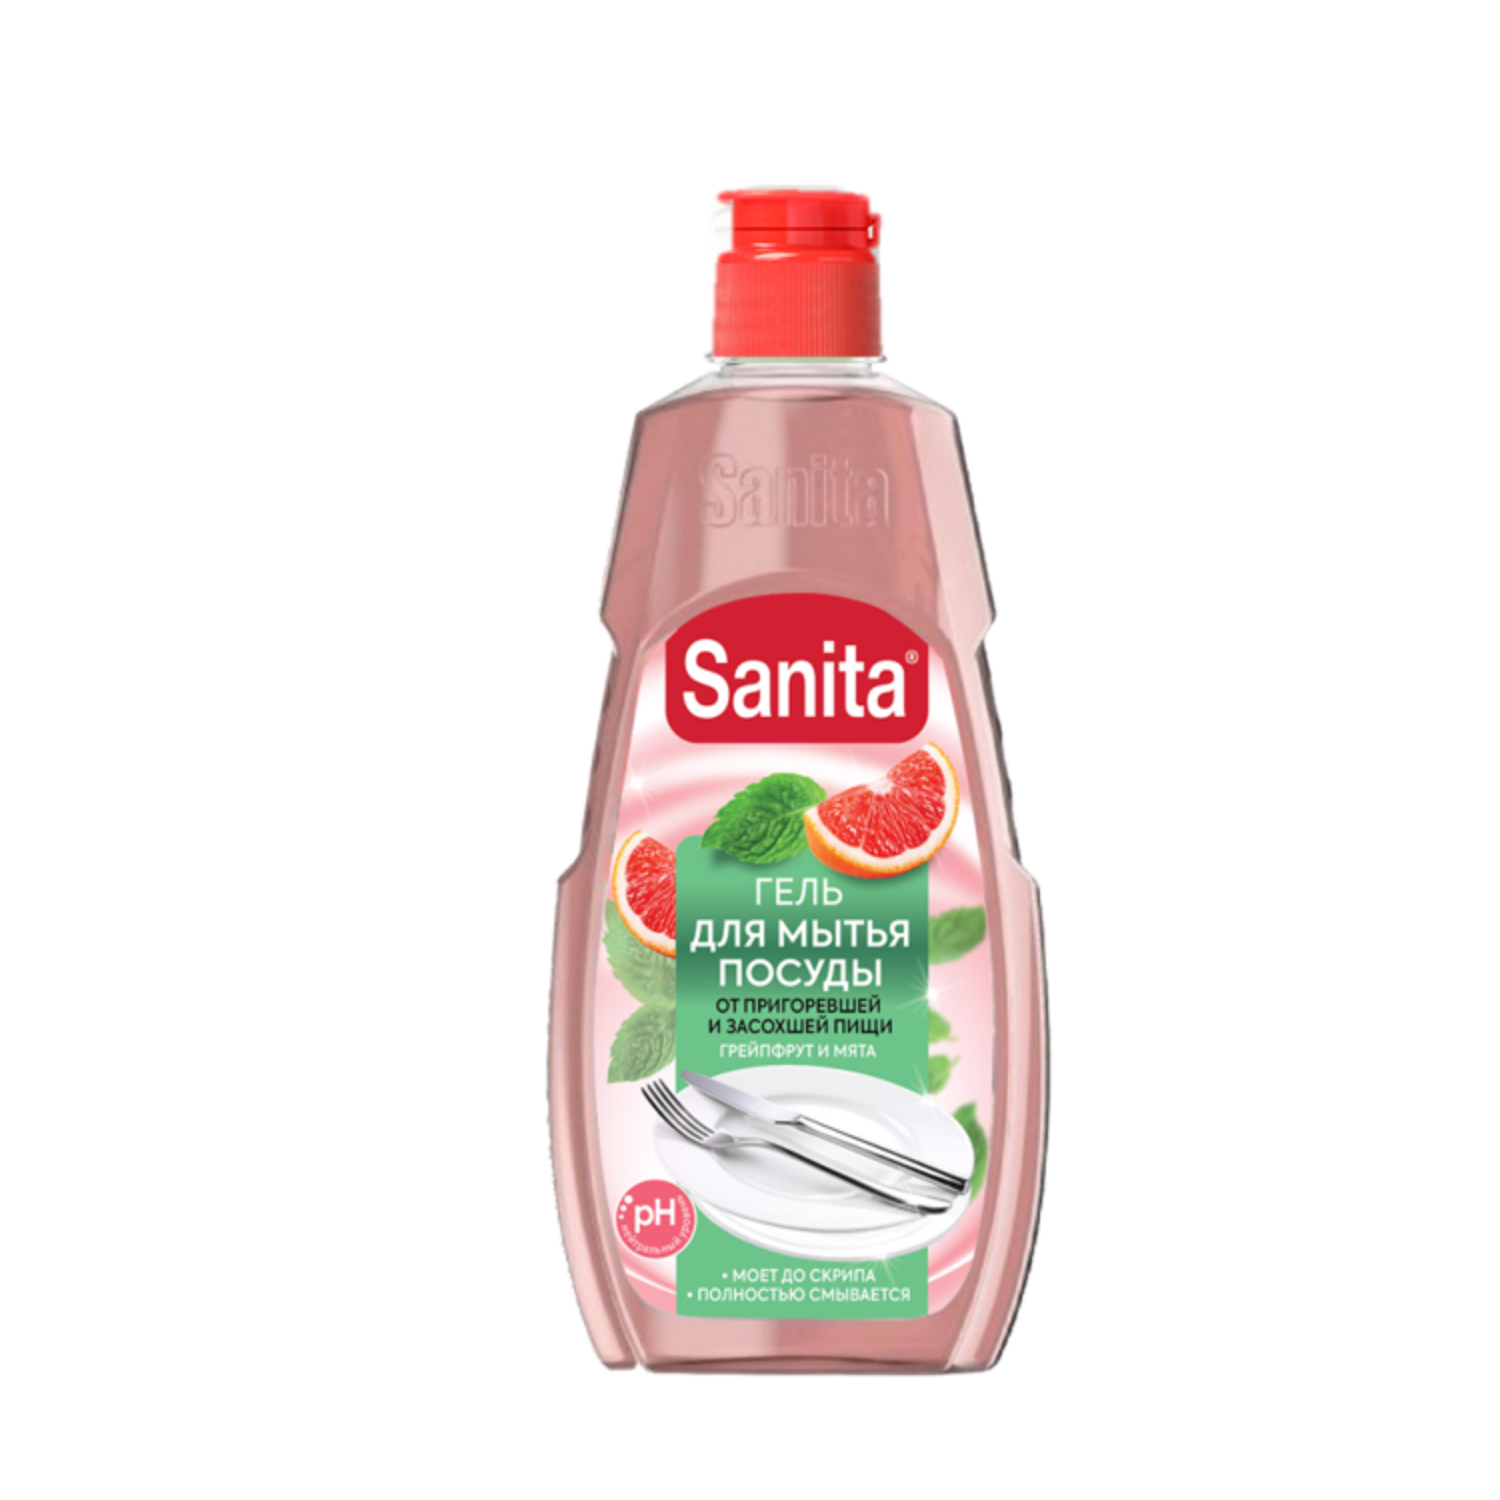 SANITA гель для мытья посуды от засохшей пищи и жира, Грейпфрут + мята, 450 г.